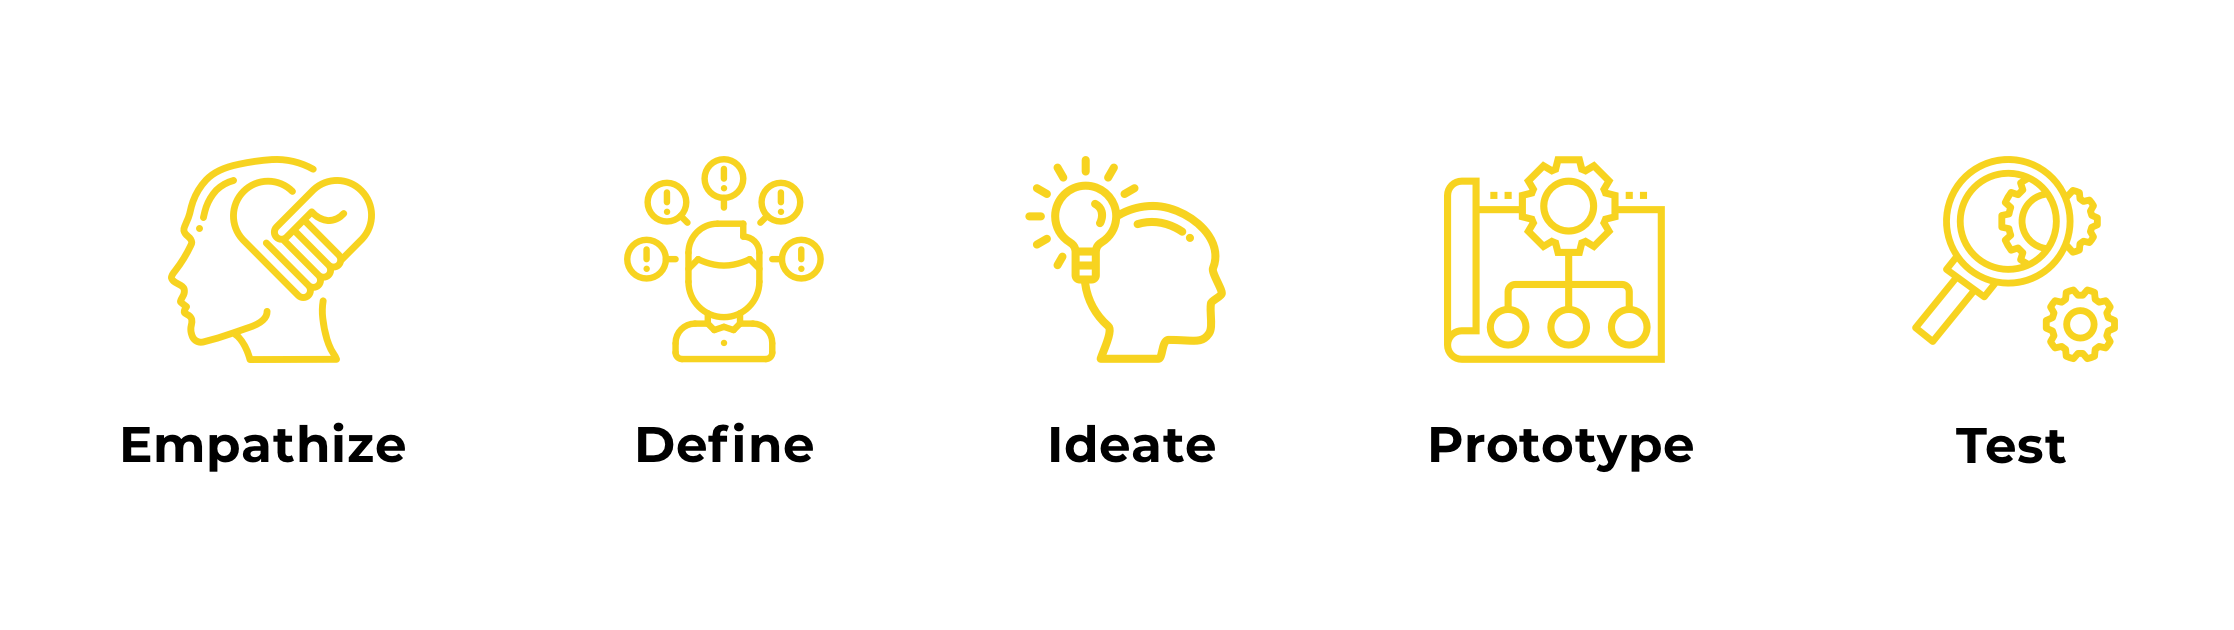 Design thinking in UX/UI design - phases_bg - Qubstudio